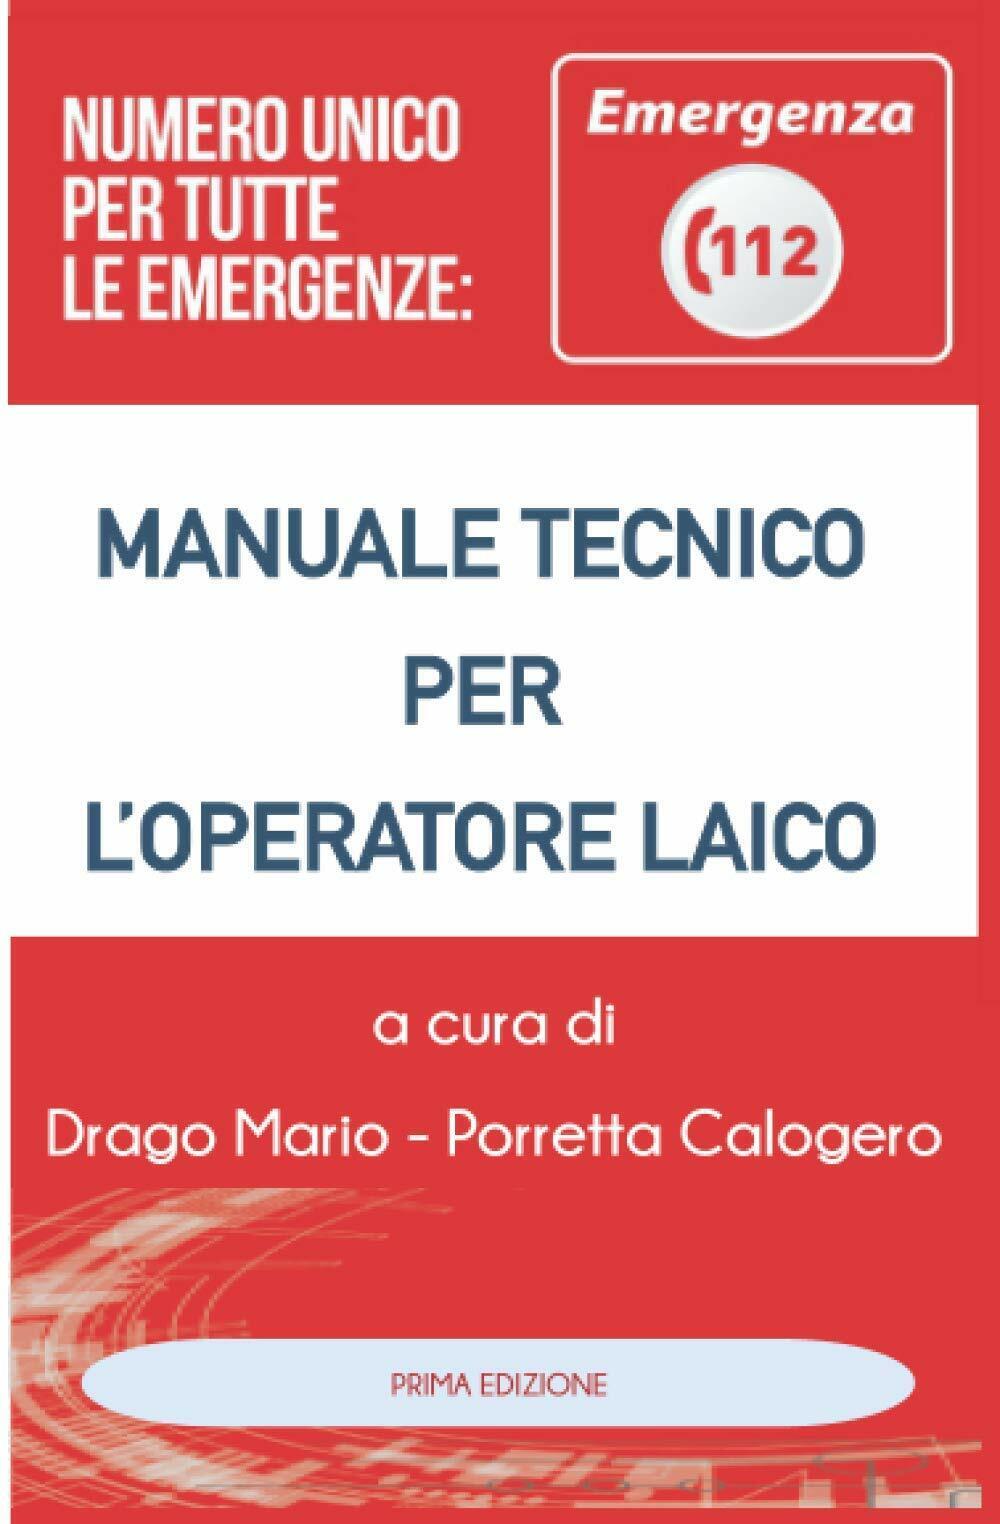 Manuale Tecnico per L'operatore Laico Numero Unico Emergenza 112  di Mario Drago